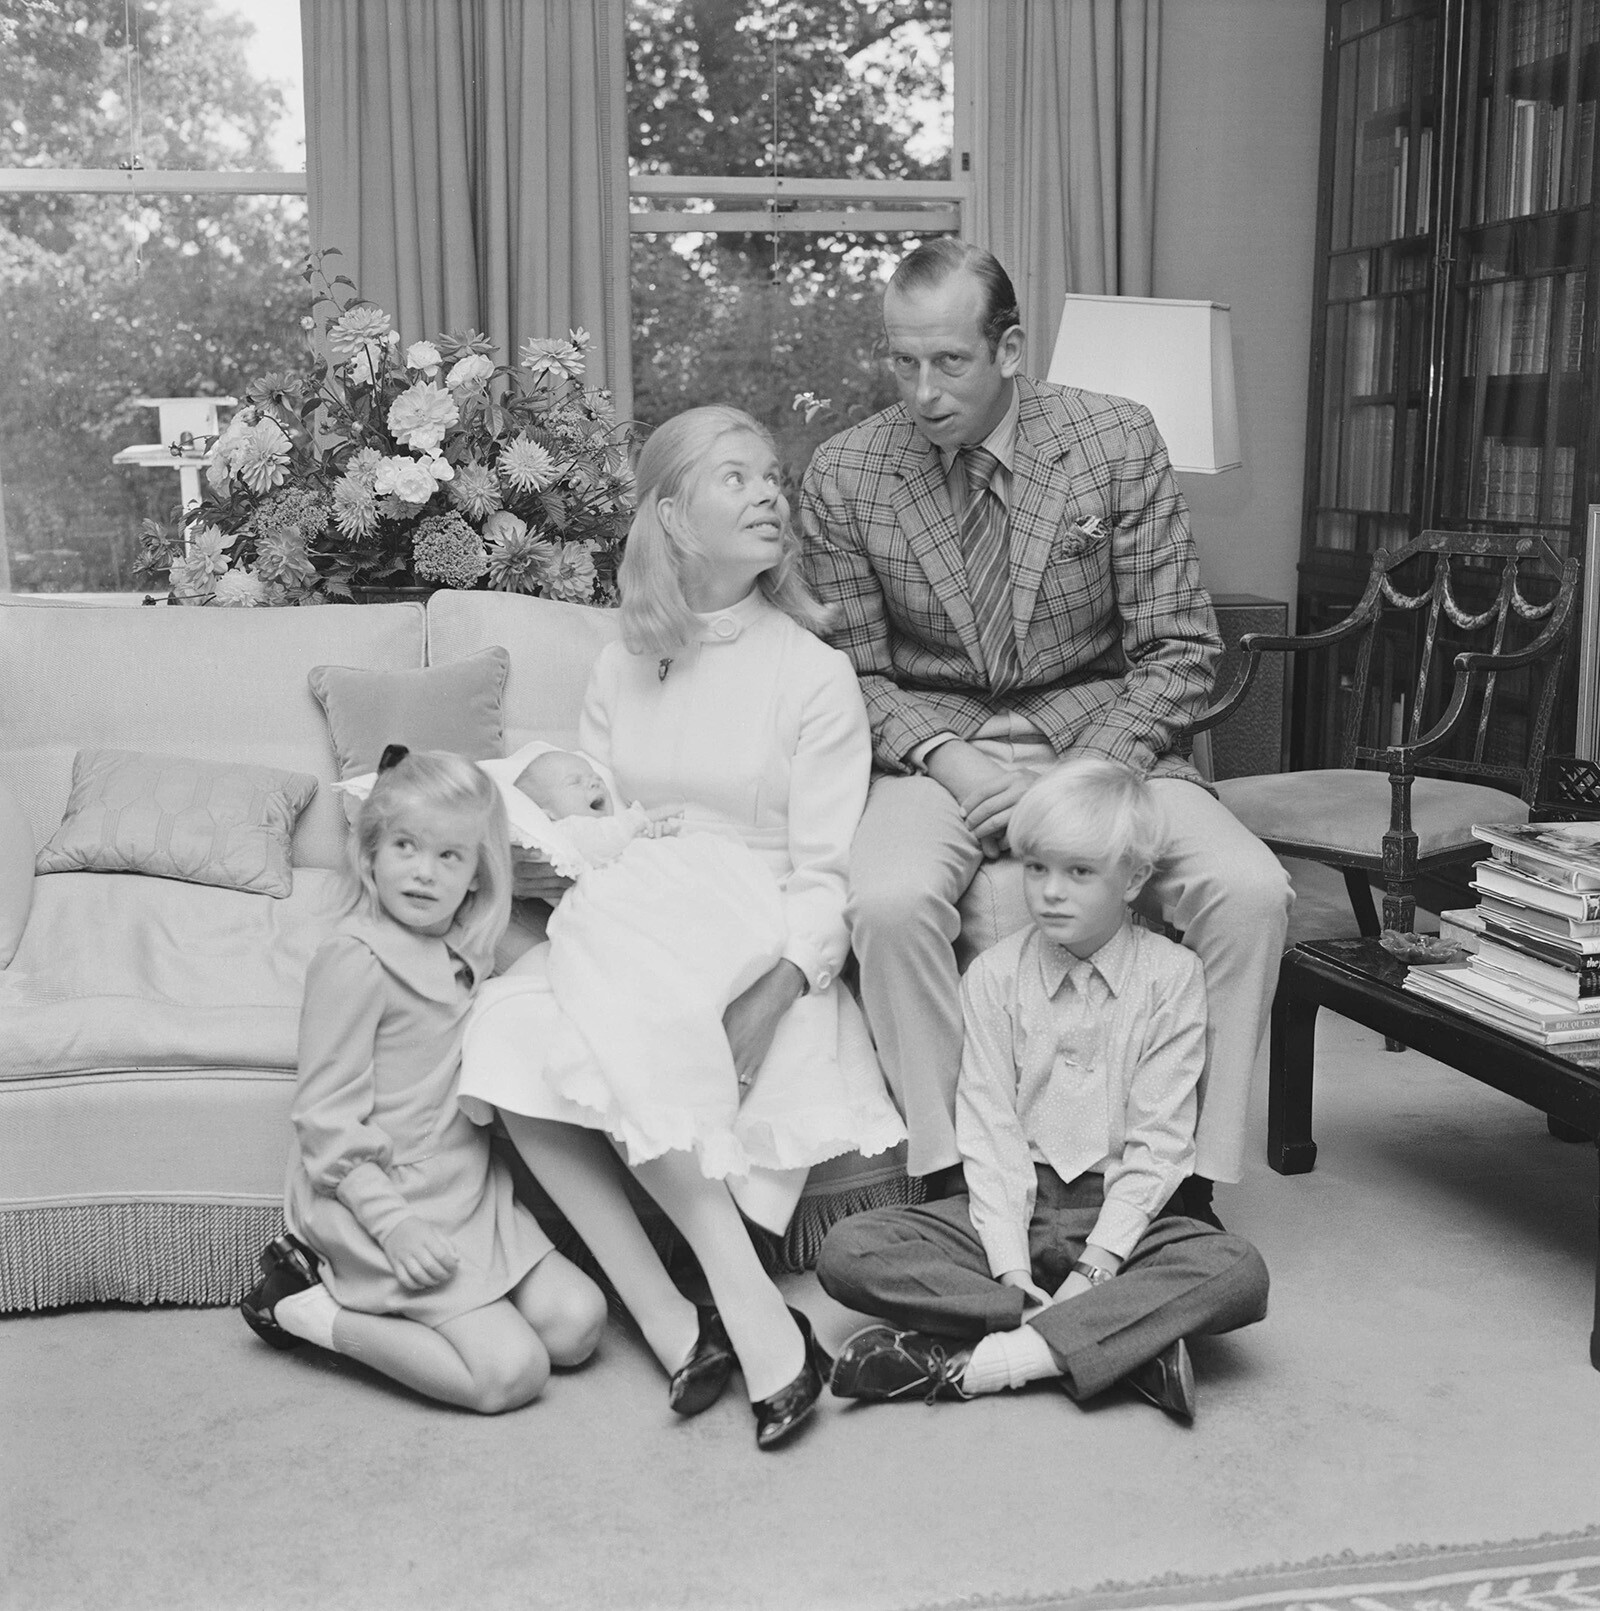 Принц Эдвард, герцог Кентский, и Кэтрин, герцогиня Кентская позируют со своими детьми Джорджем Виндзором, Хелен Виндзор (ныне леди Хелен Тейлор) и маленьким сыном Николасом Виндзором дома в Лондоне 10 сентября 1970 года